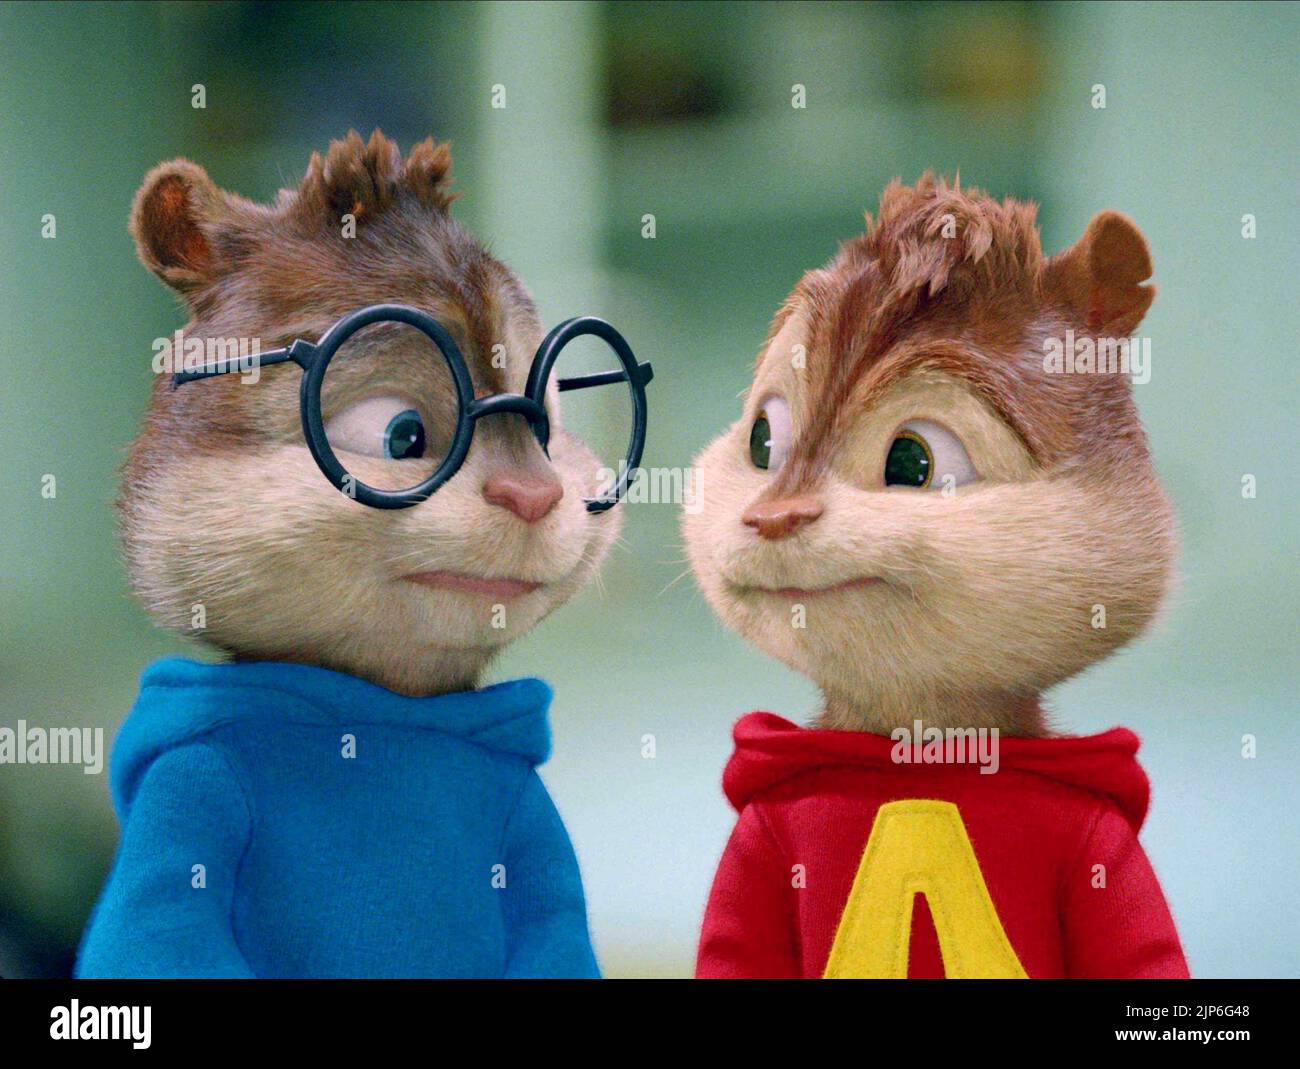 Simon alvin and the chipmunks fotografías e imágenes de alta resolución -  Alamy